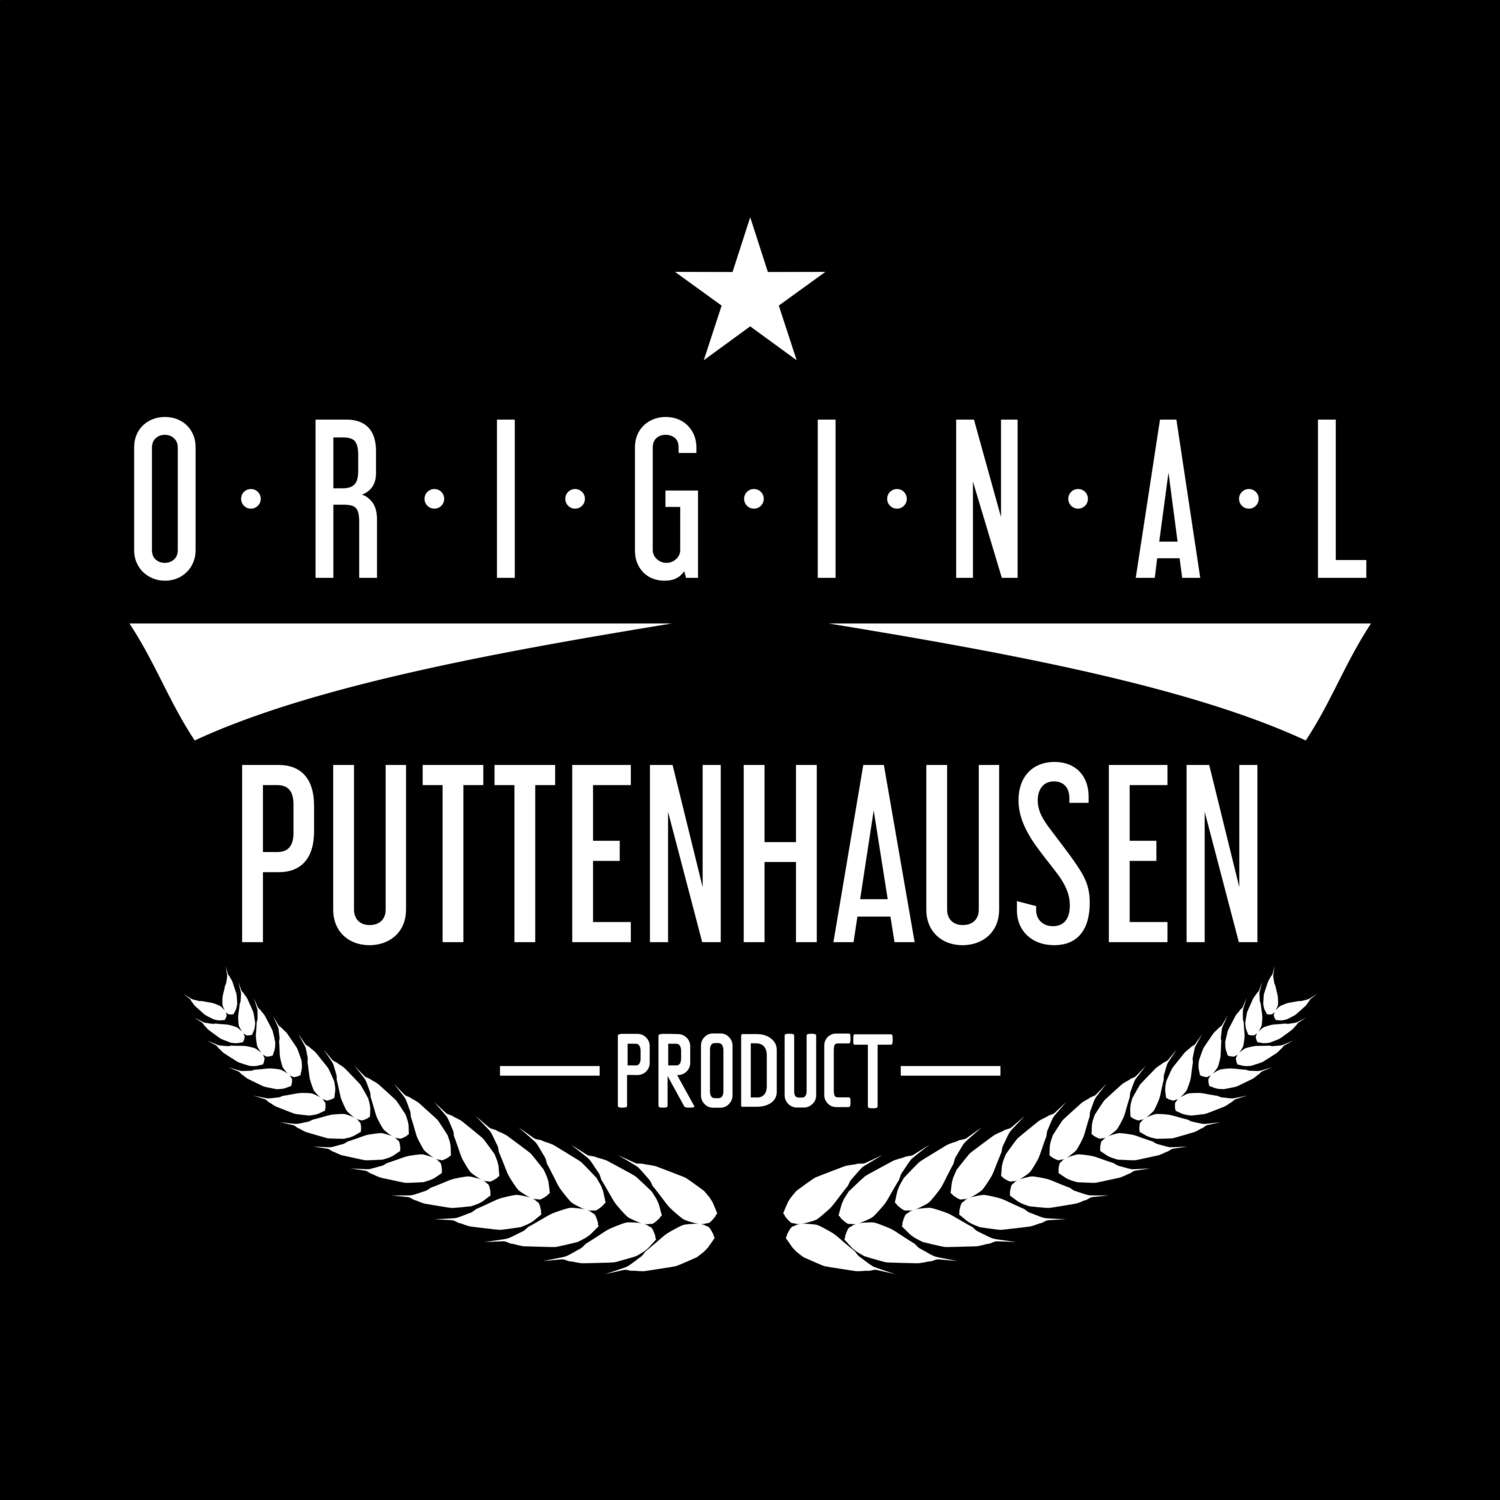 Puttenhausen T-Shirt »Original Product«